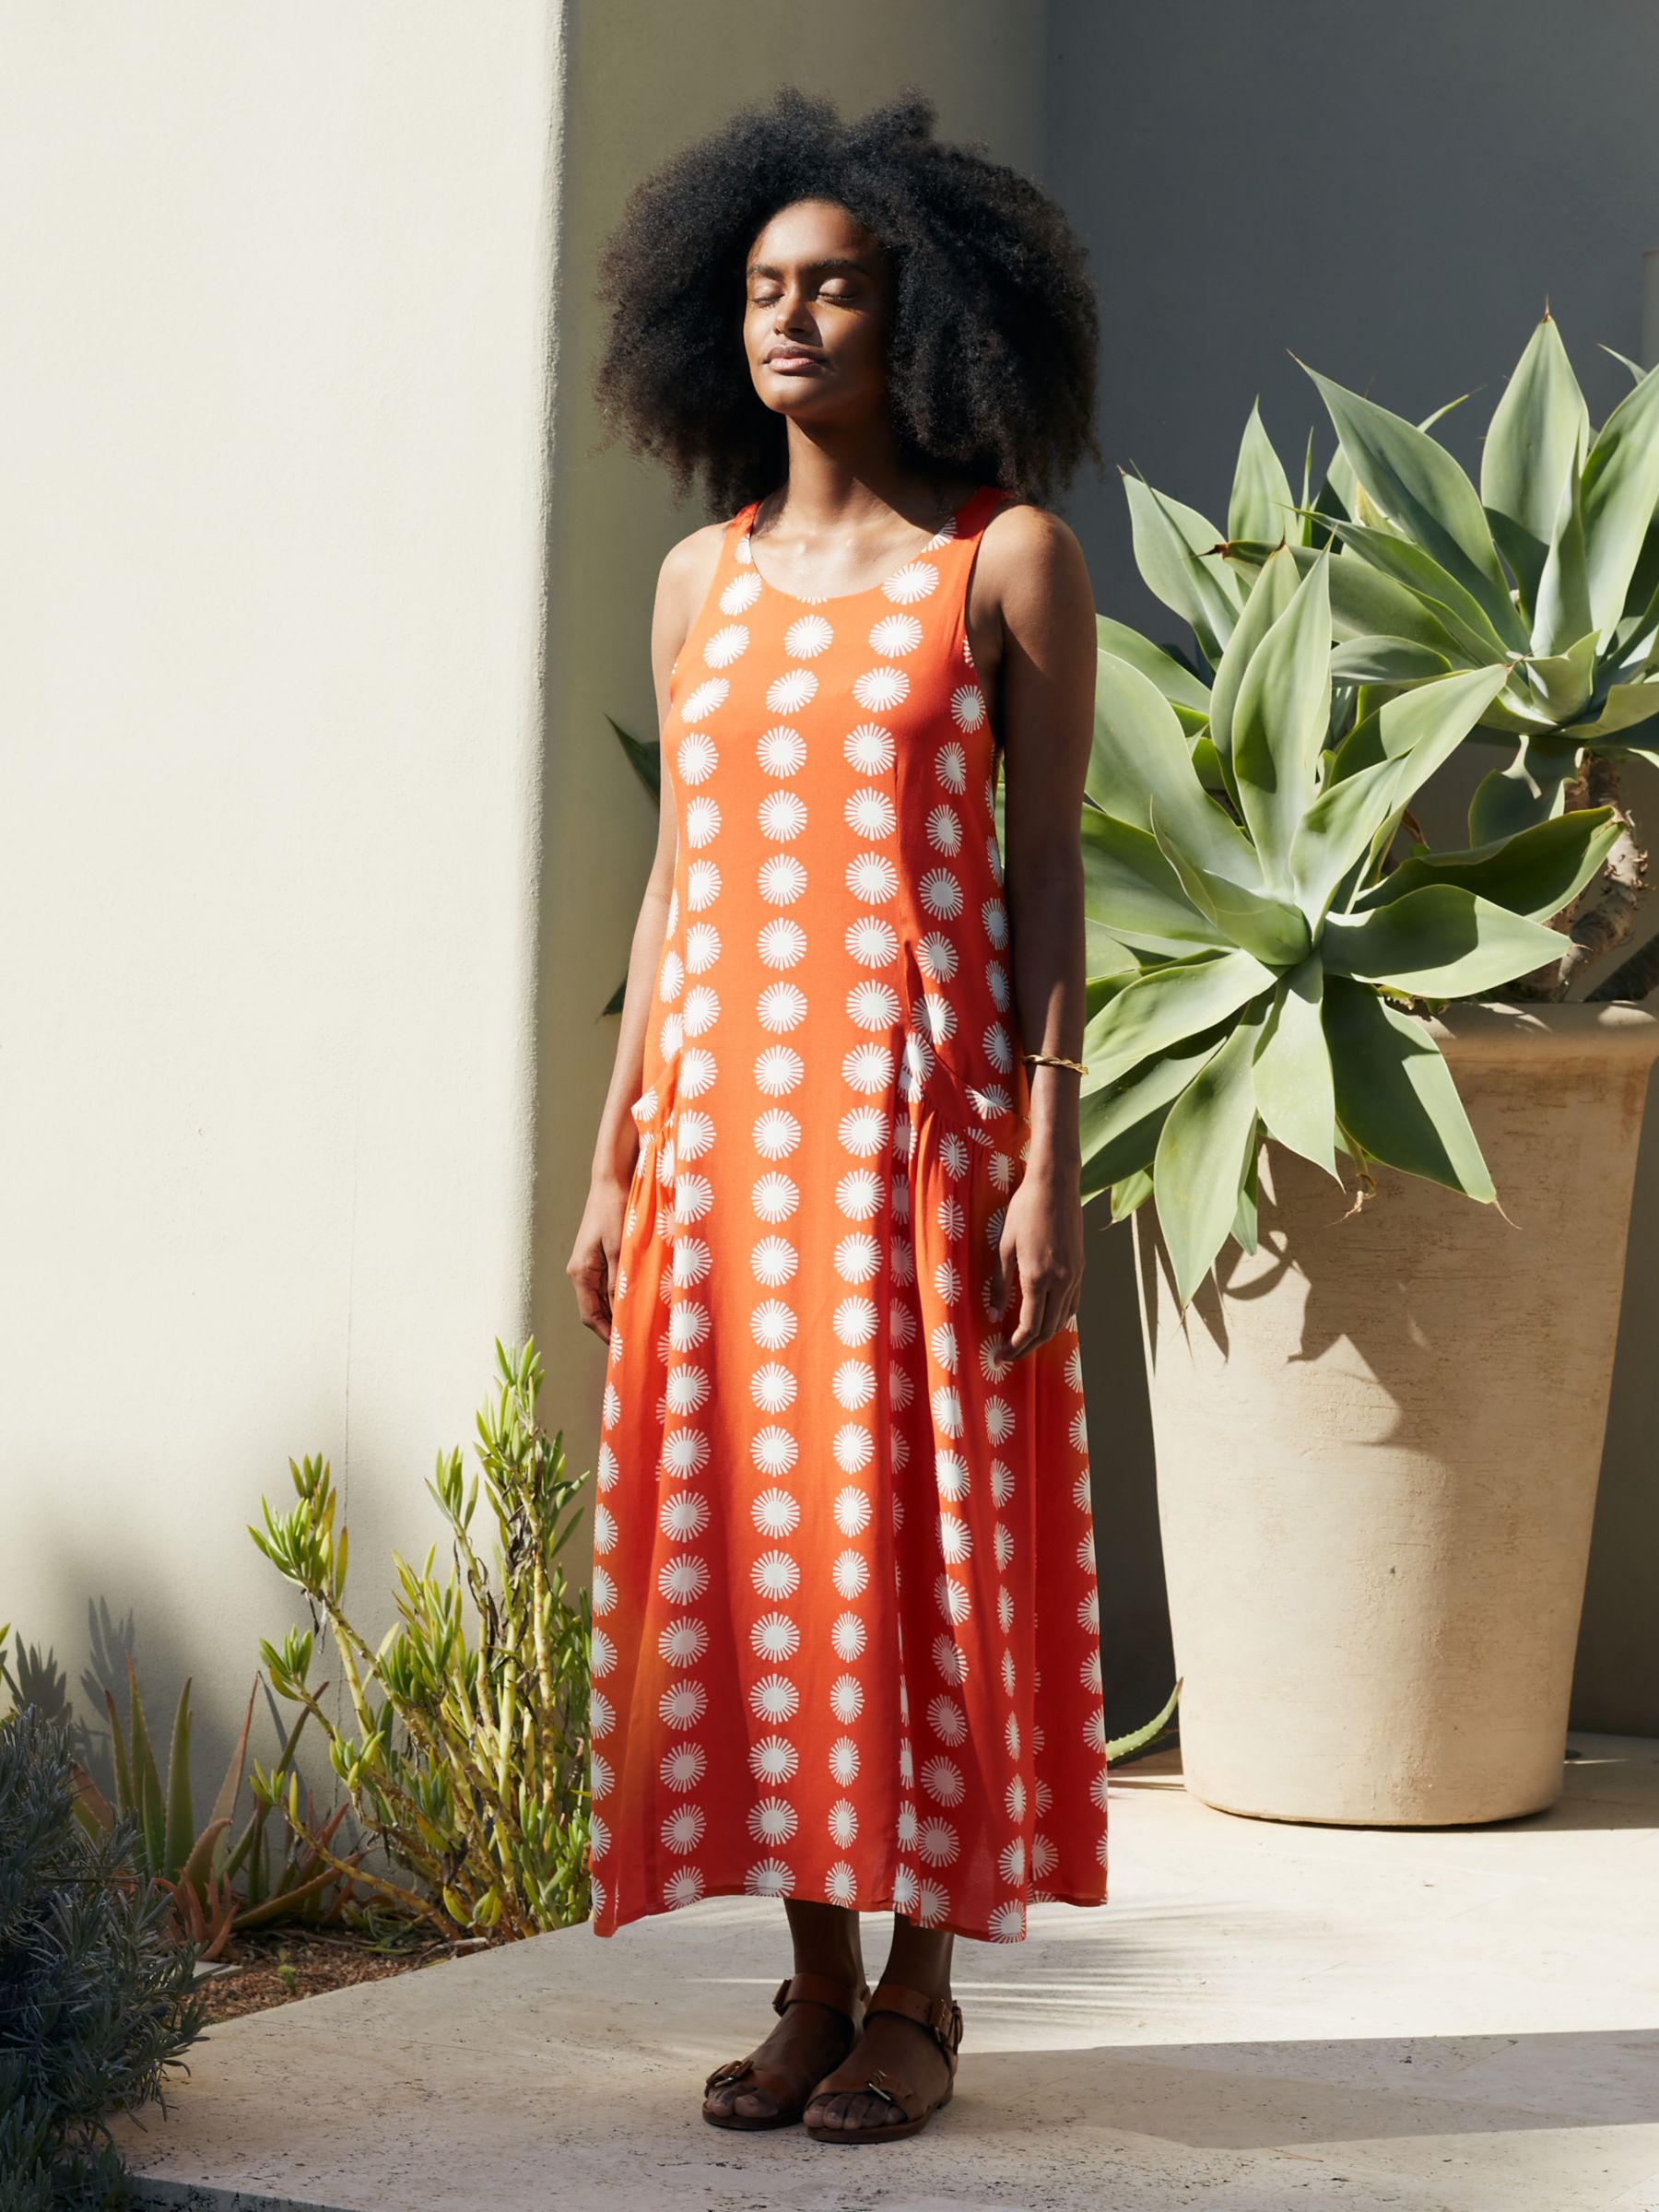 Chinti & Parker Formentera Midi Dress, Orange/Cream, 6